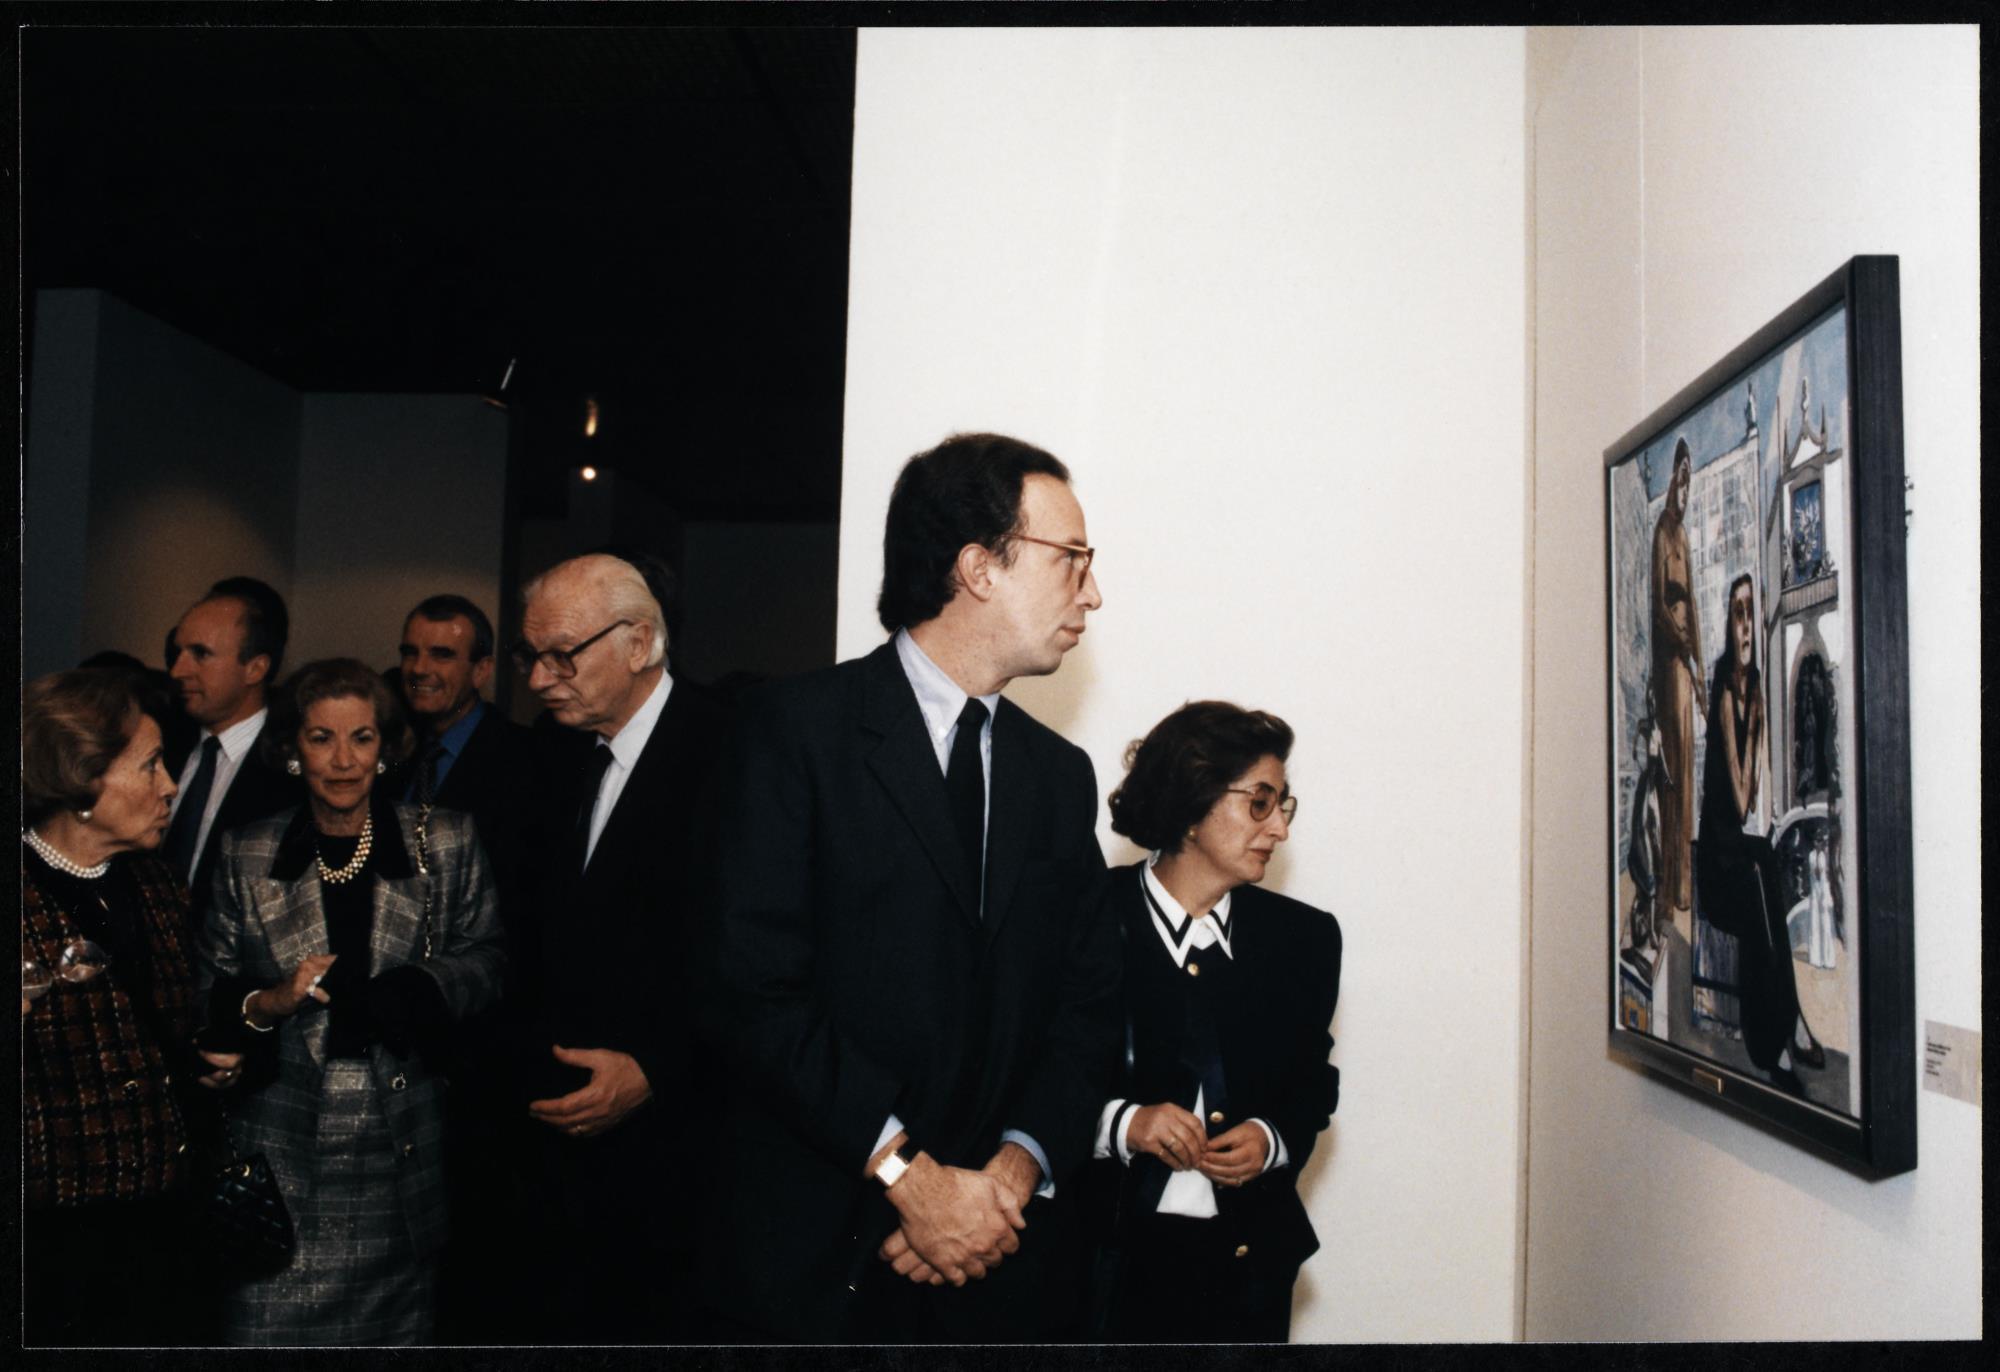 Visita oficial. Maria Barroso (à esq.), José Sommer Ribeiro (ao centro) e Pedro Santana Lopes (à dir.)